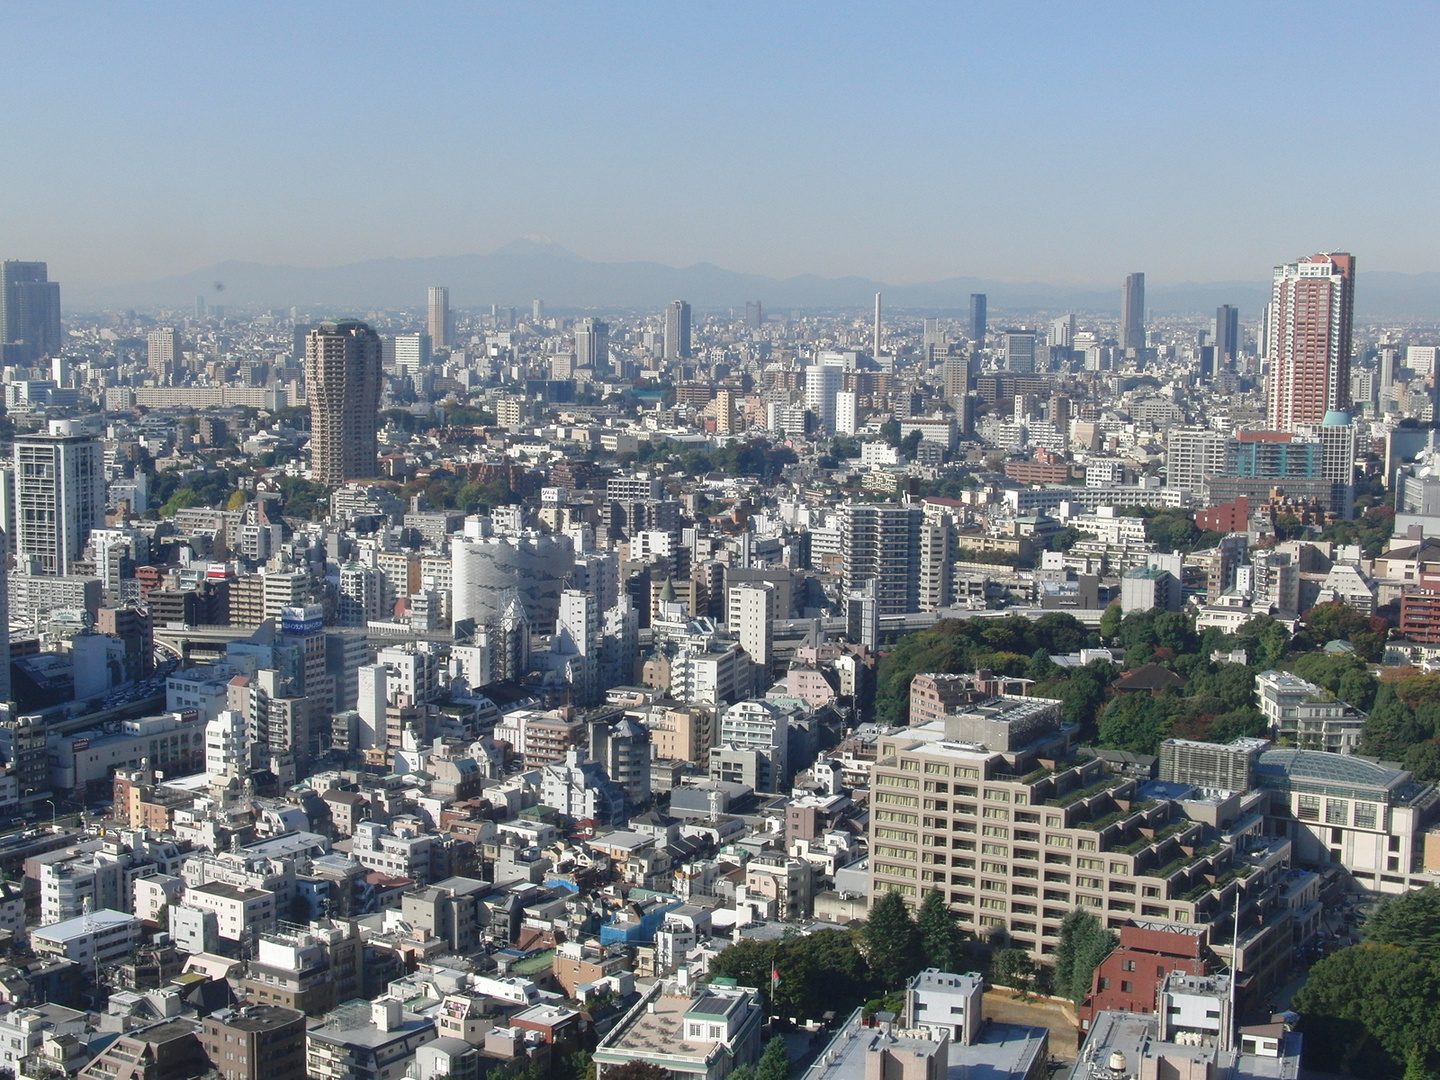 Tokio von oben